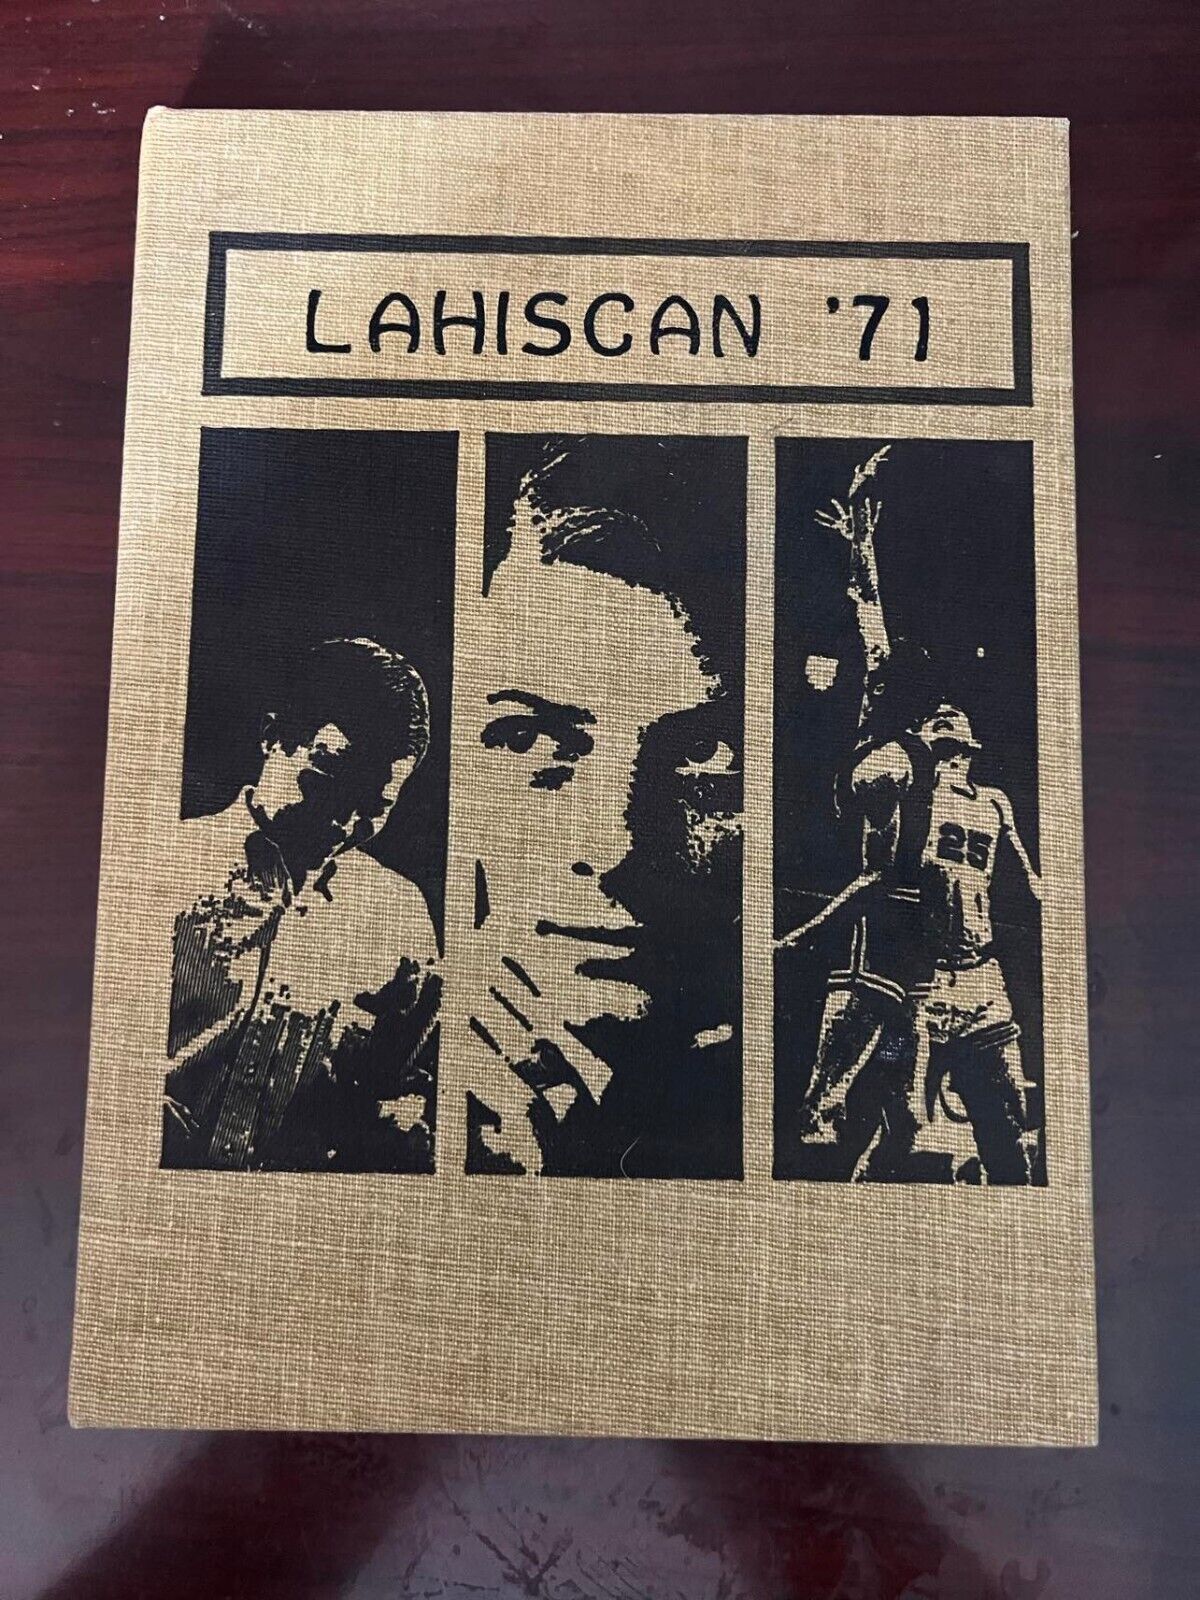 1970 Lakota High School Yearbook - North Dakota - Lahiscan, 